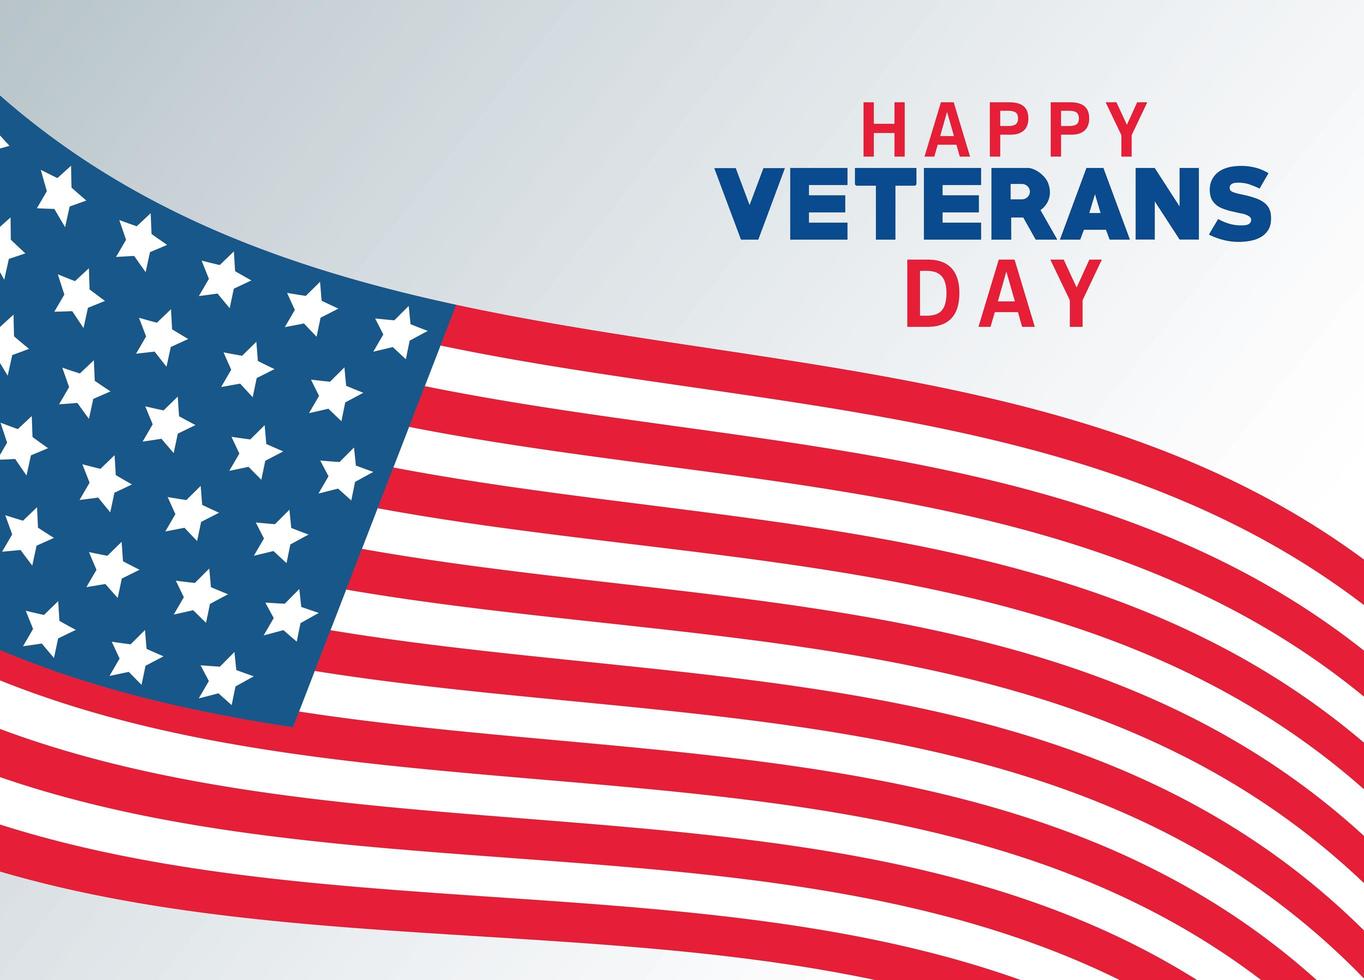 Happy Veterans Day Schriftzug mit USA Flagge vektor